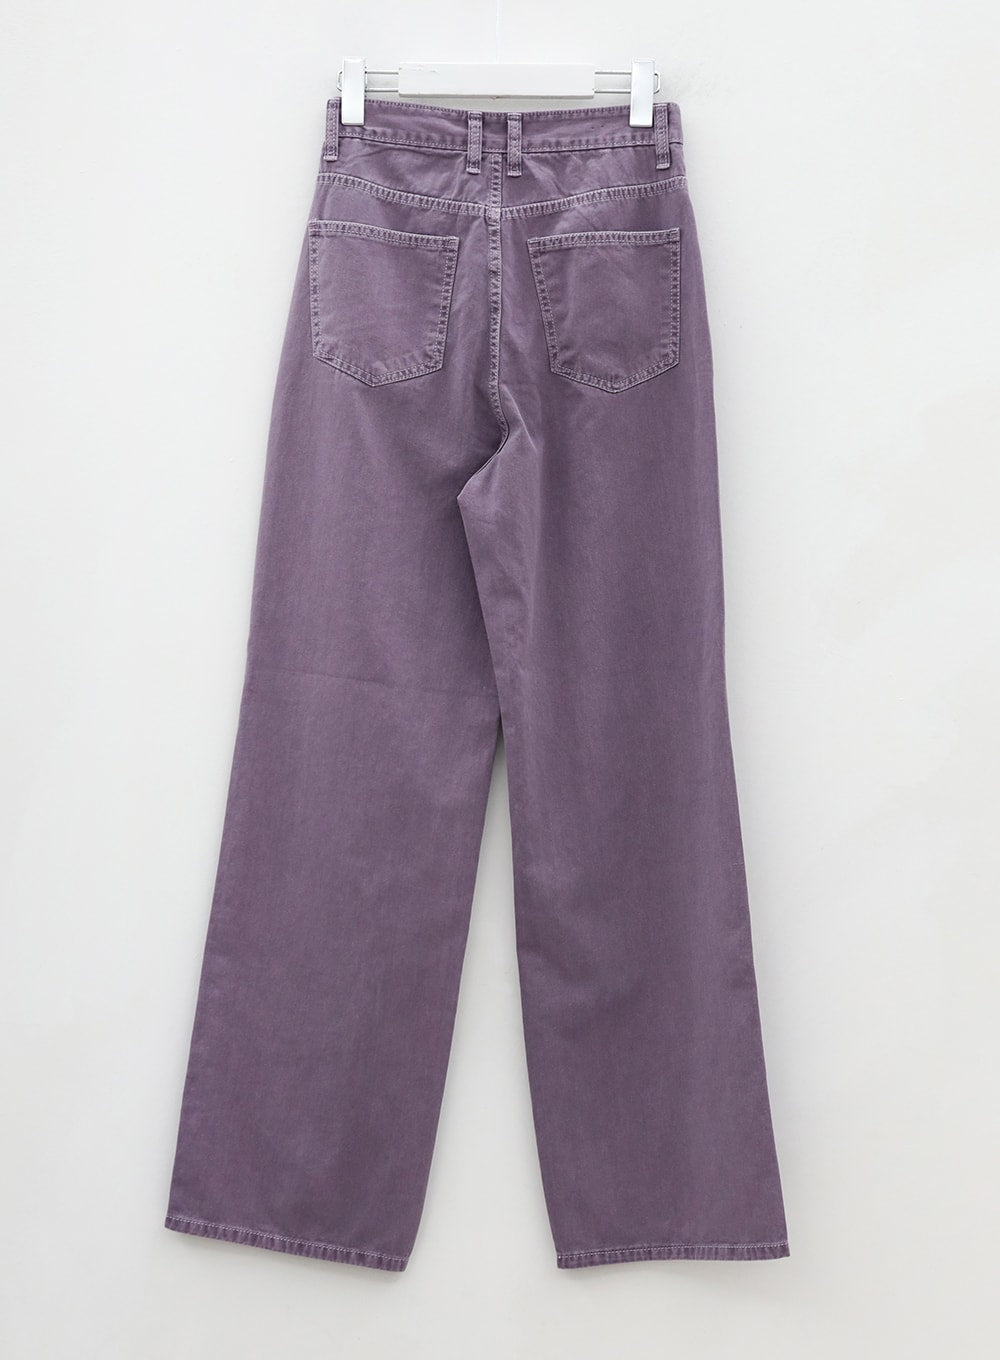 Long Cotton Colored Wide Pants OU15